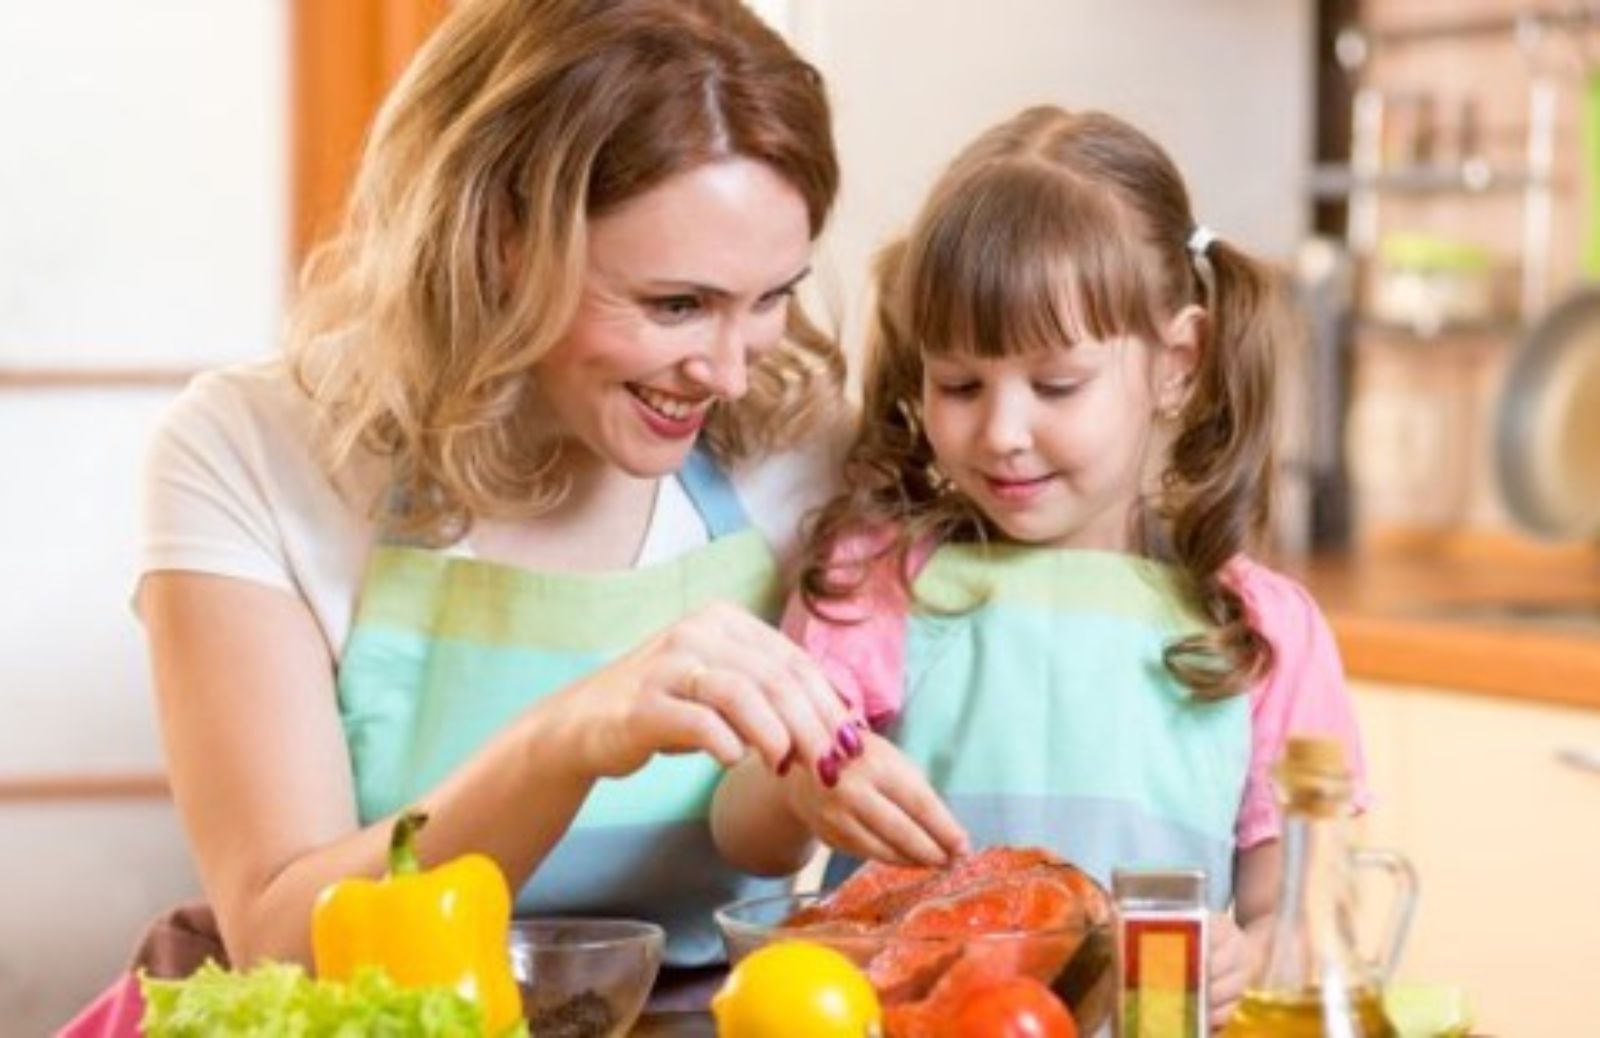 Manine in pasta! Le 10 migliori ricette per (e con) i bambini